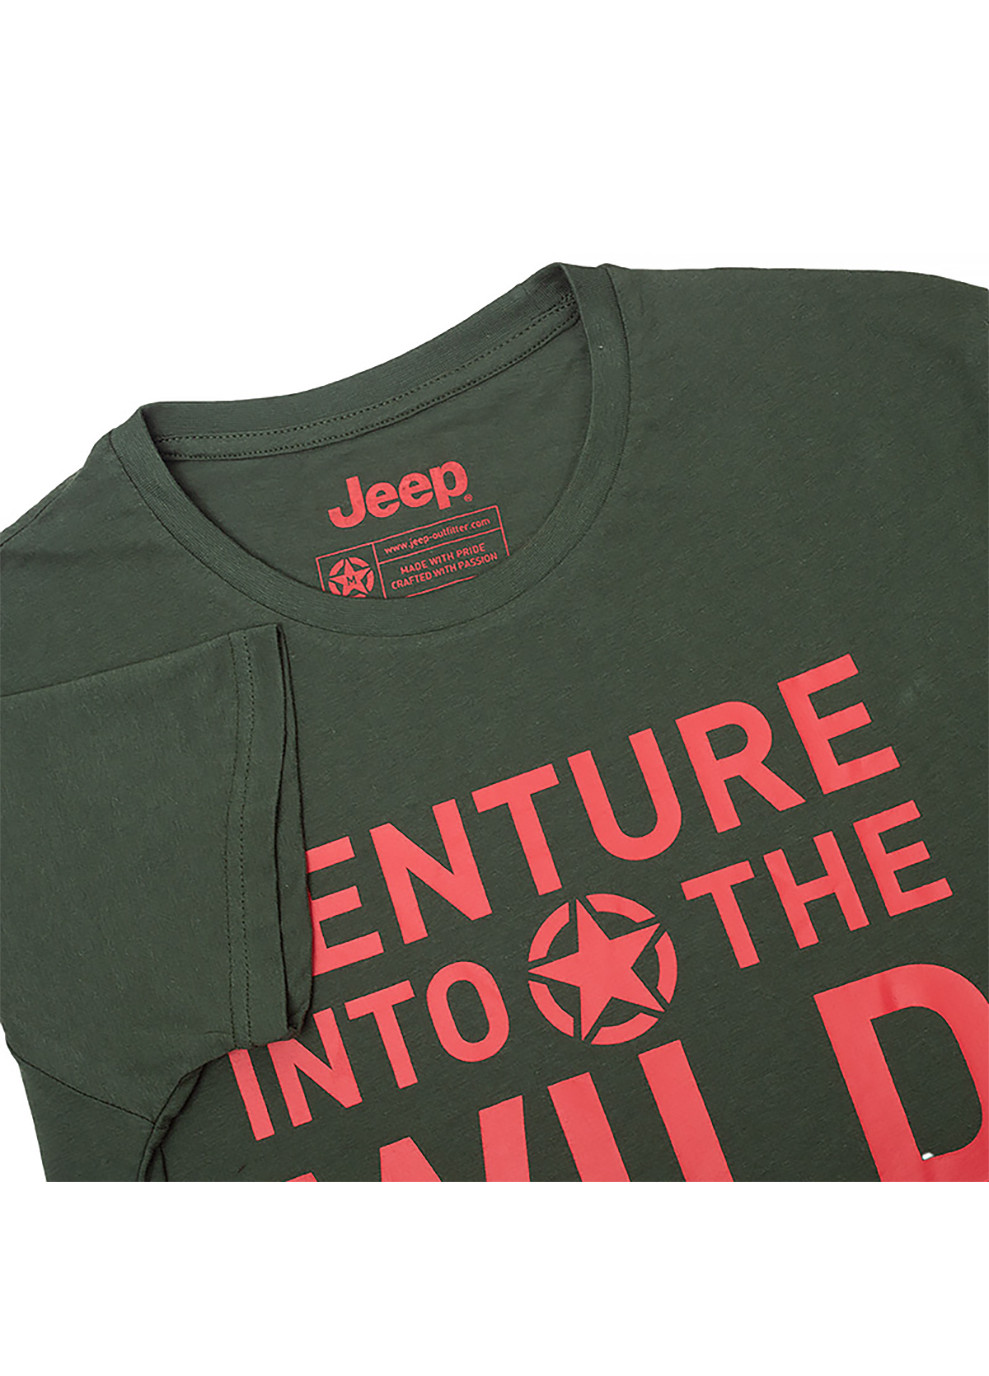 Хакі (оливкова) чоловіча футболка t-shirt venture into the wild хакі l (o102592-e848 l) Jeep